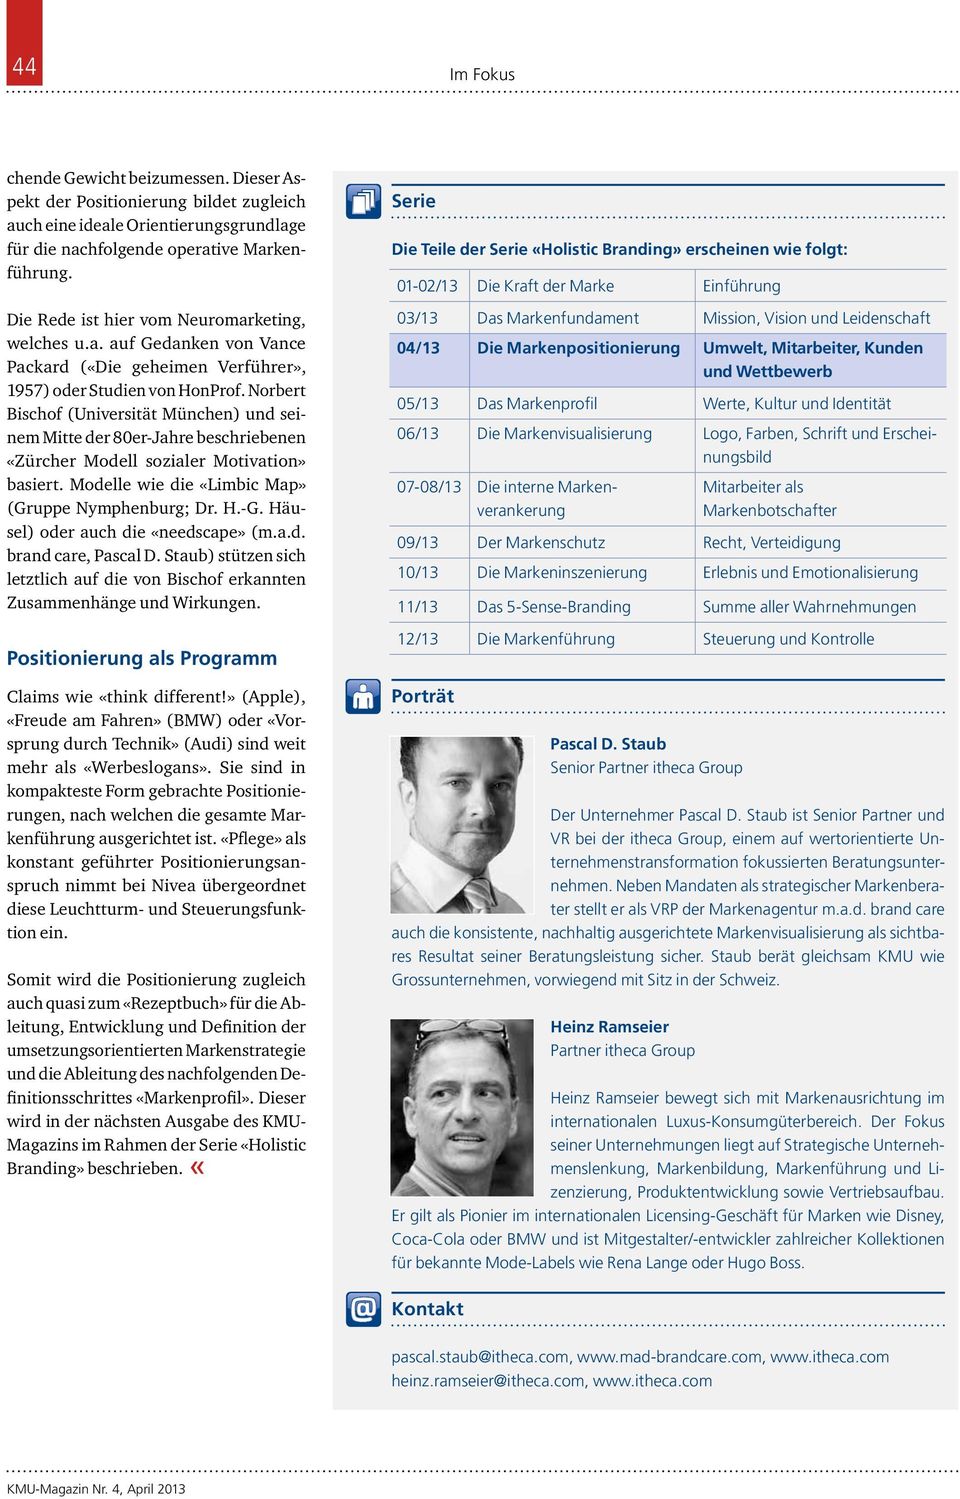 Norbert Bischof (Universität München) und seinem Mitte der 80er-Jahre beschriebenen «Zürcher Modell sozialer Motivation» basiert. Modelle wie die «Limbic Map» (Gruppe Nymphenburg; Dr. H.-G.